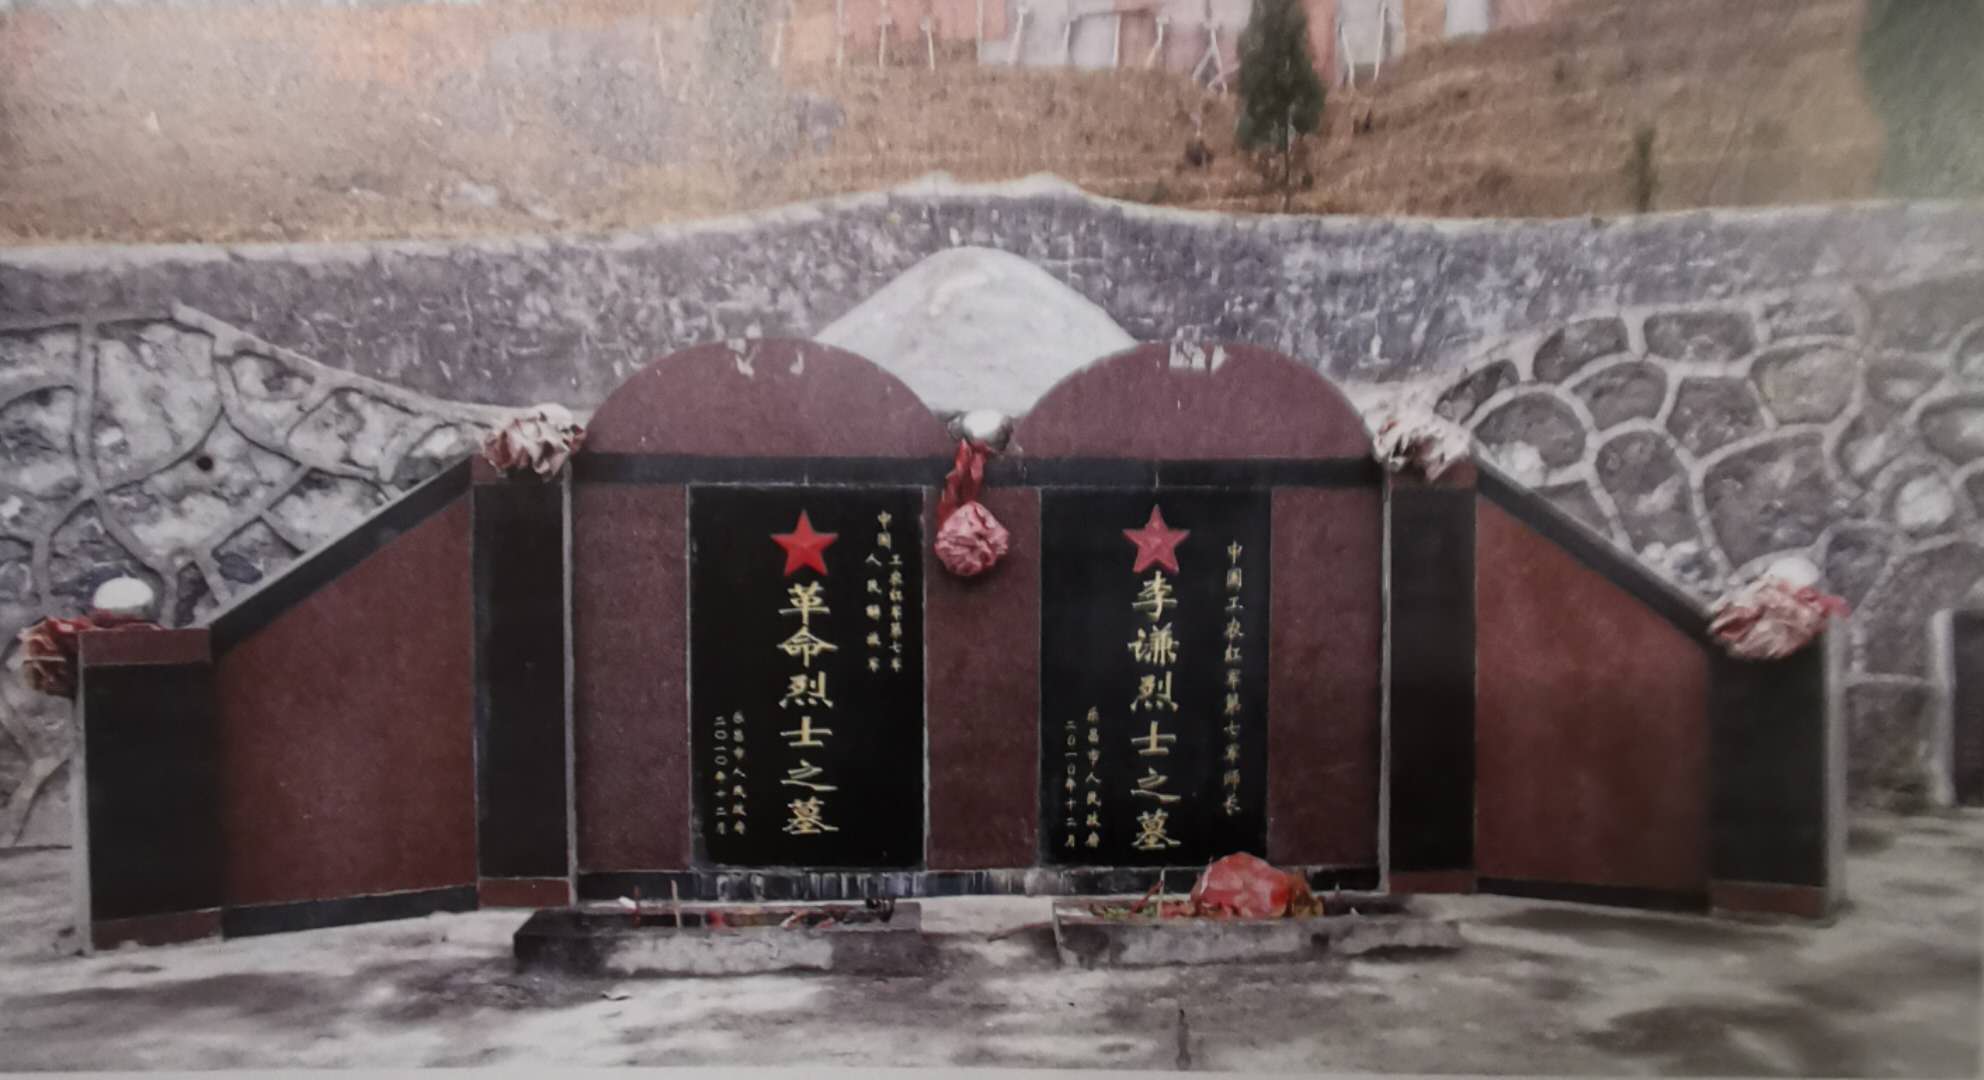 红七军纪念园内的革命烈士墓和李谦烈士墓.jpg